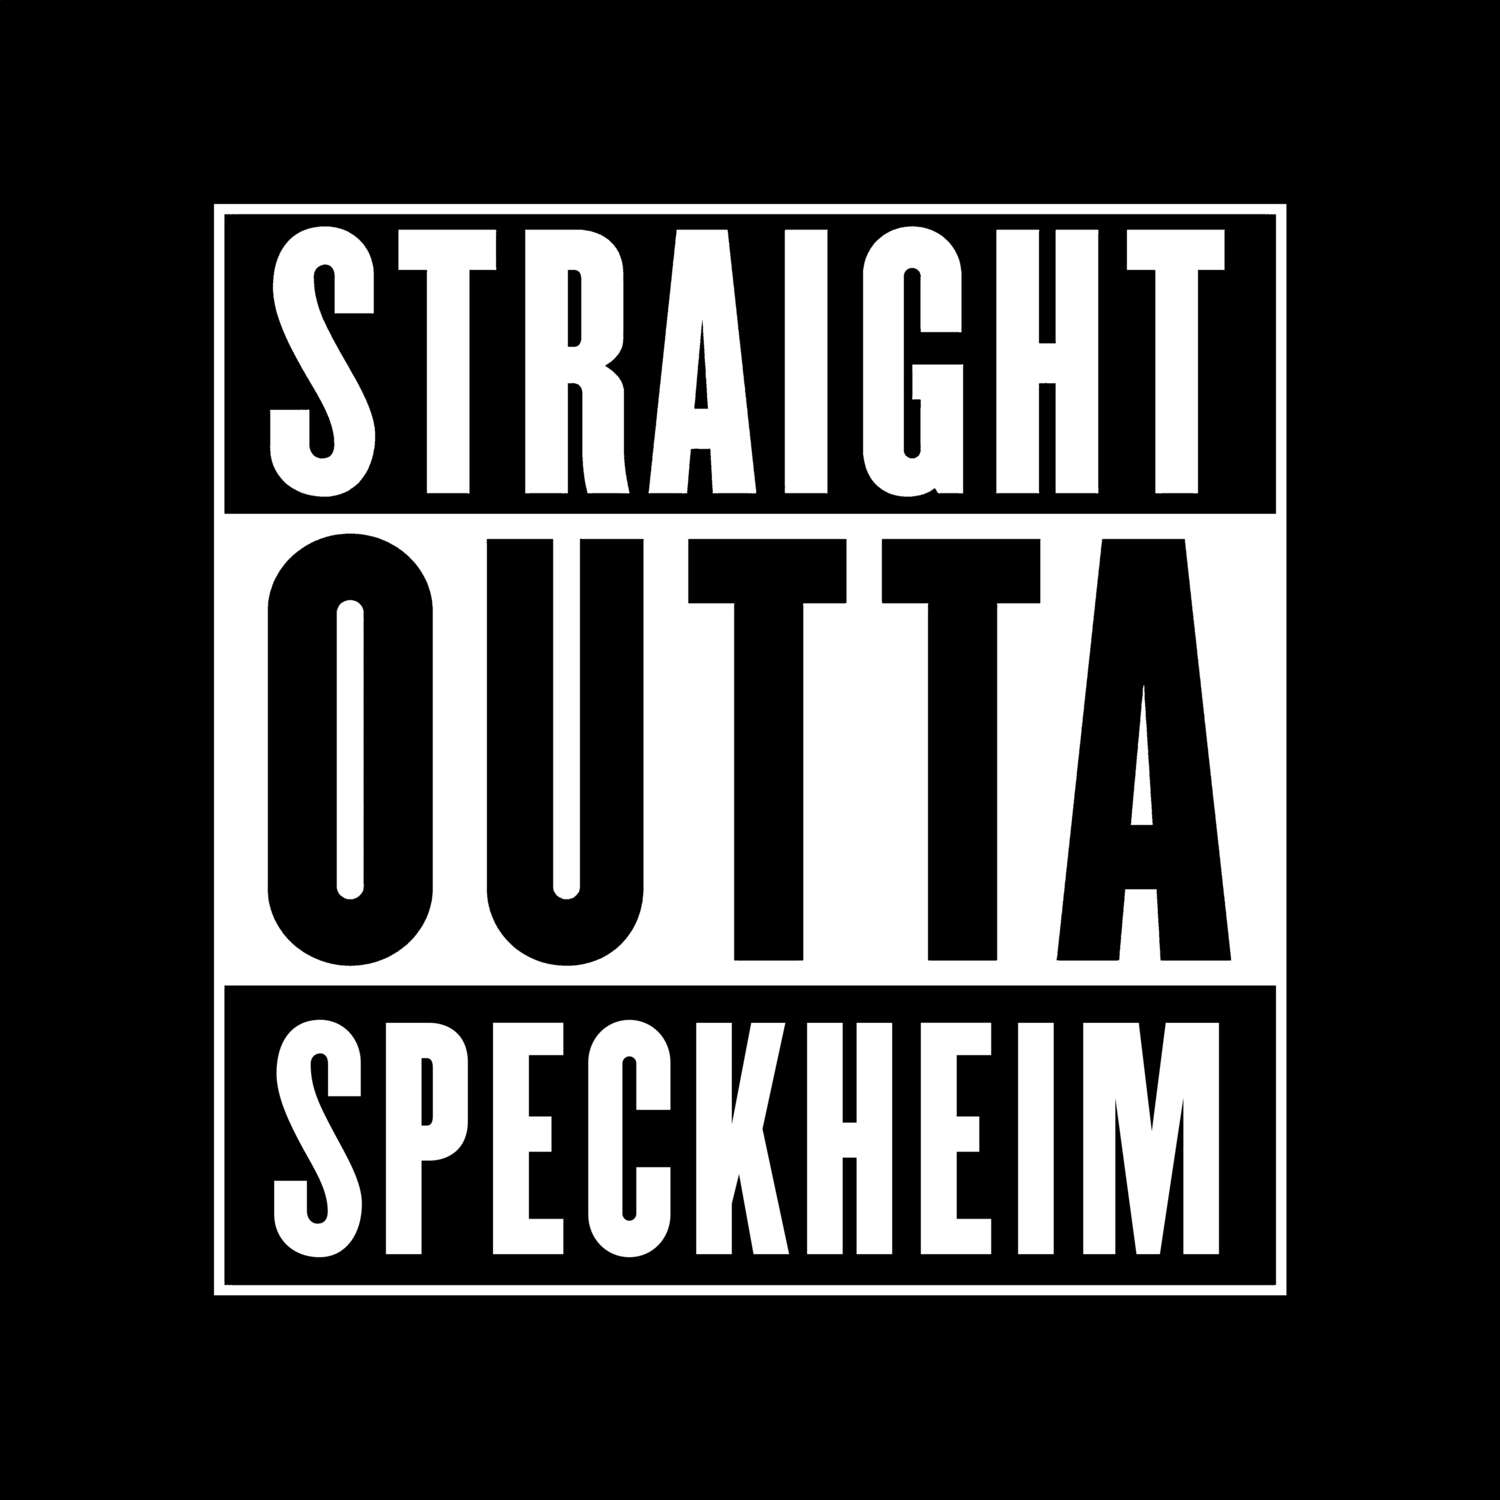 Speckheim T-Shirt »Straight Outta«